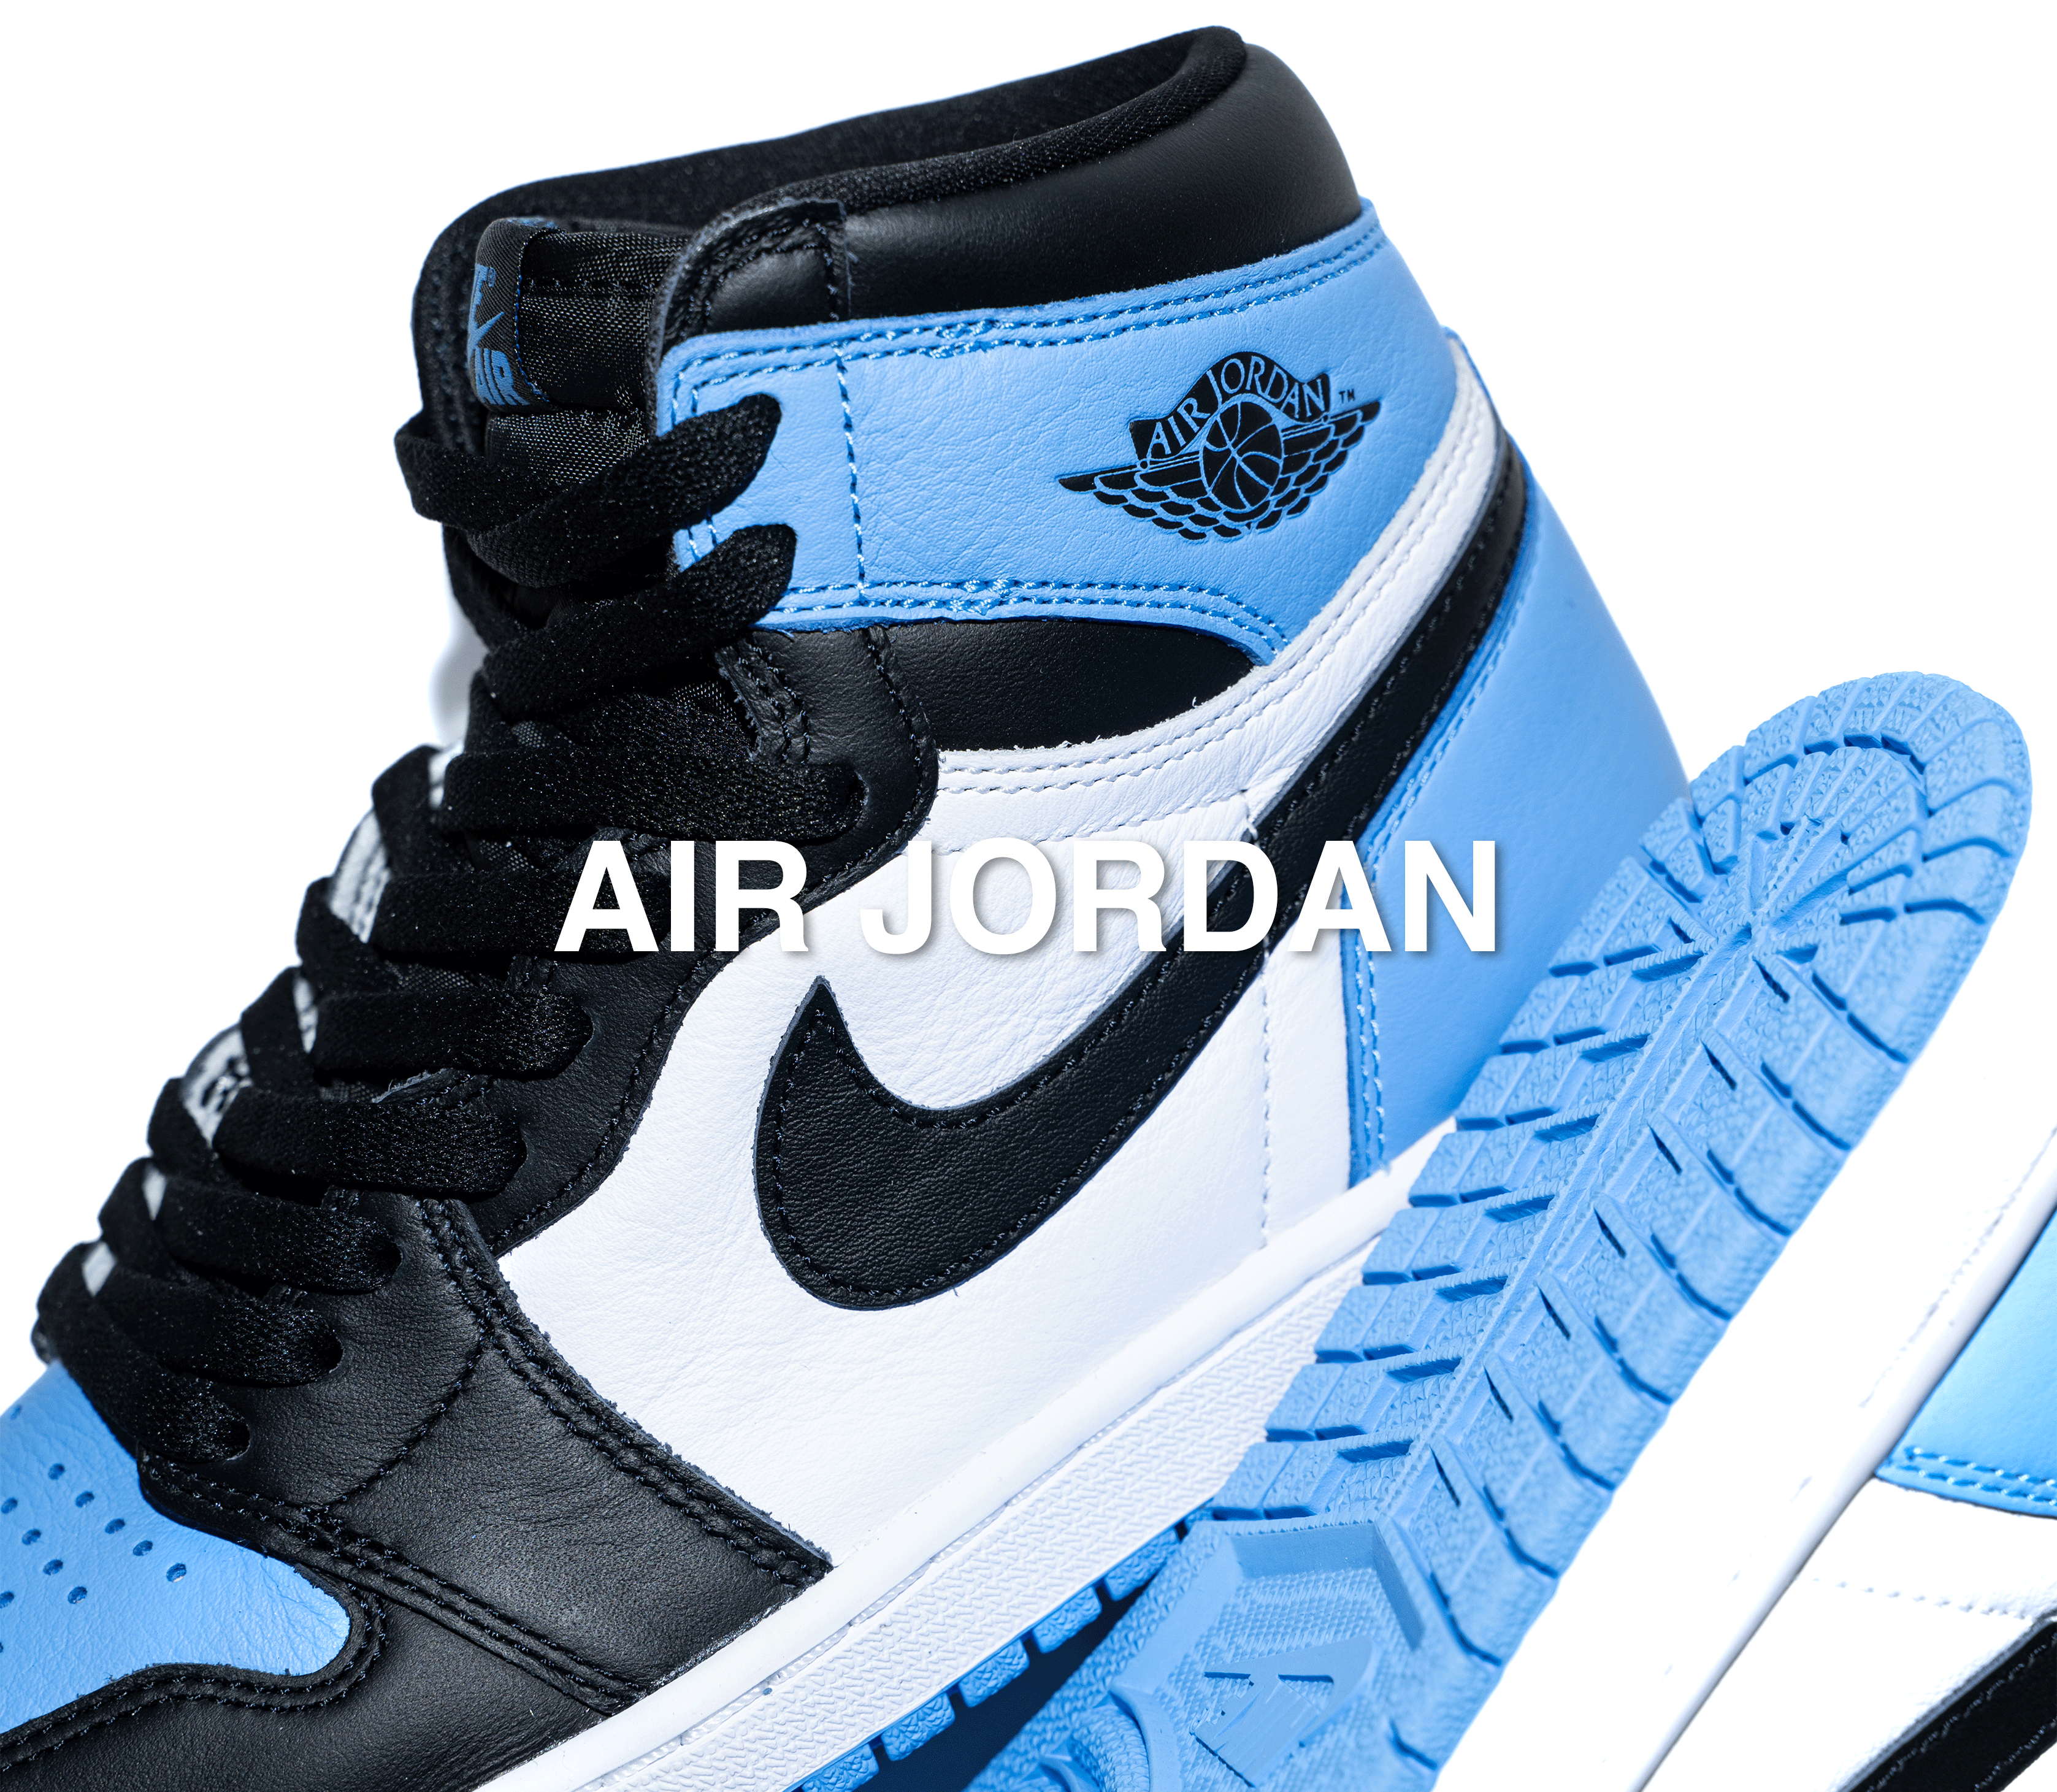 Air Jordan Shoes - Get Air Jordan Shoes 